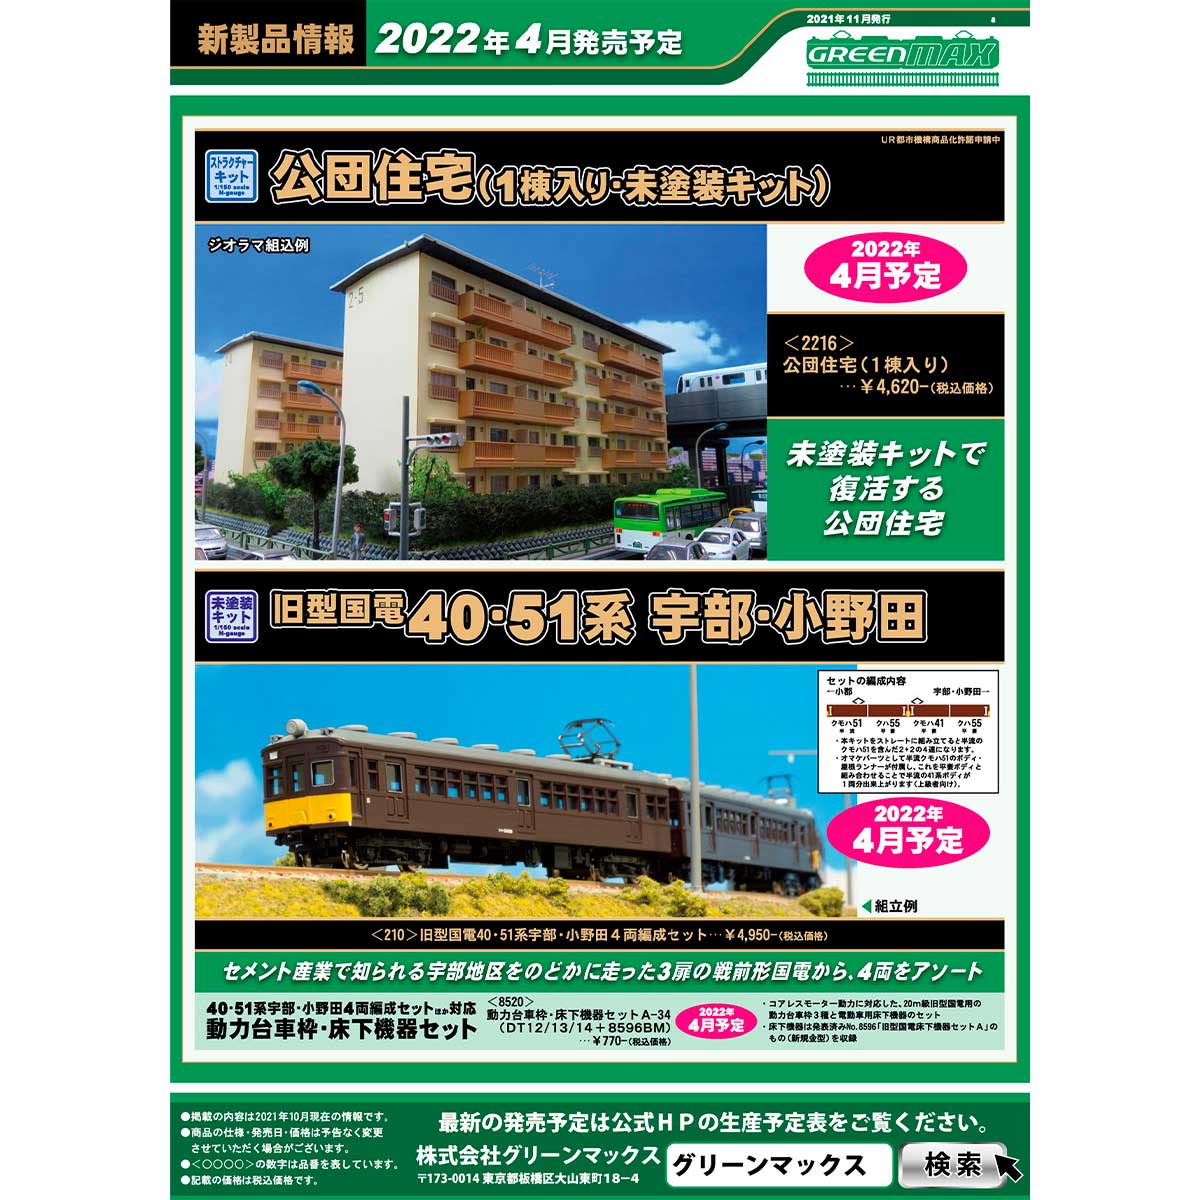 2021年11月10日発行a｜新製品情報ポスター｜Nゲージ鉄道模型のグリーンマックス